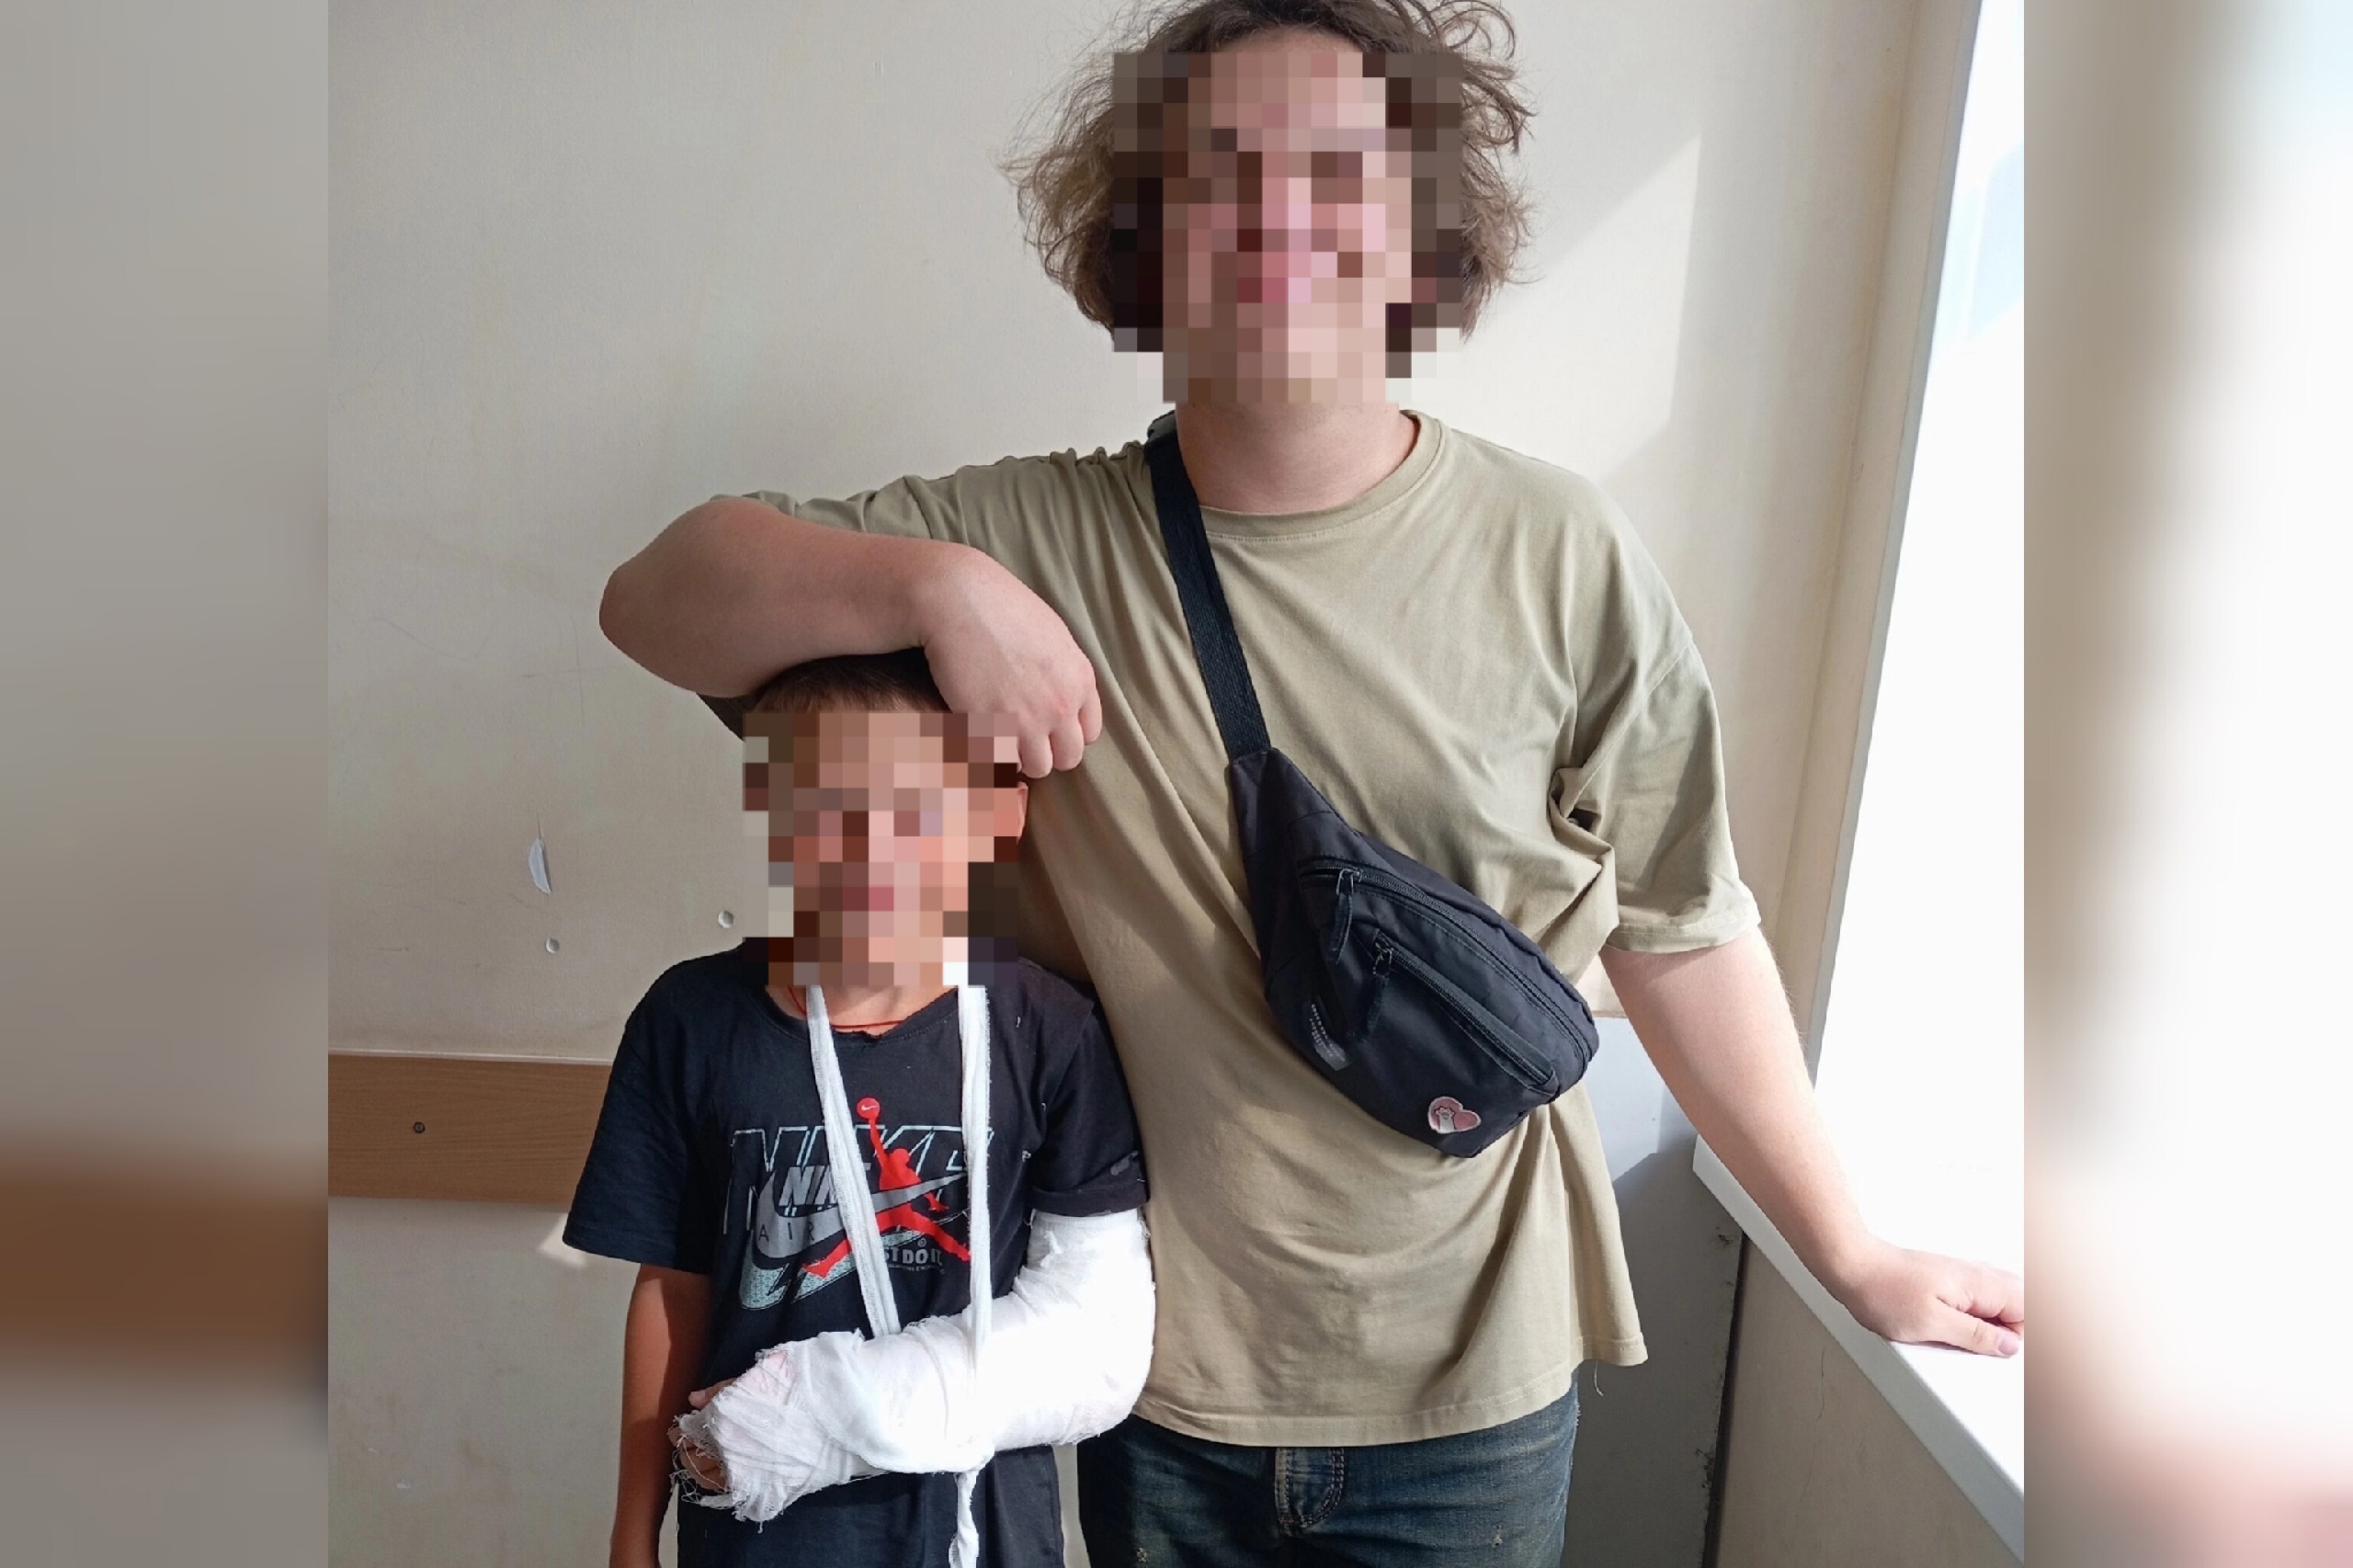 "Поступили в отделение травматологии со сложным переломом": ярославский доктор спас мальчику руку